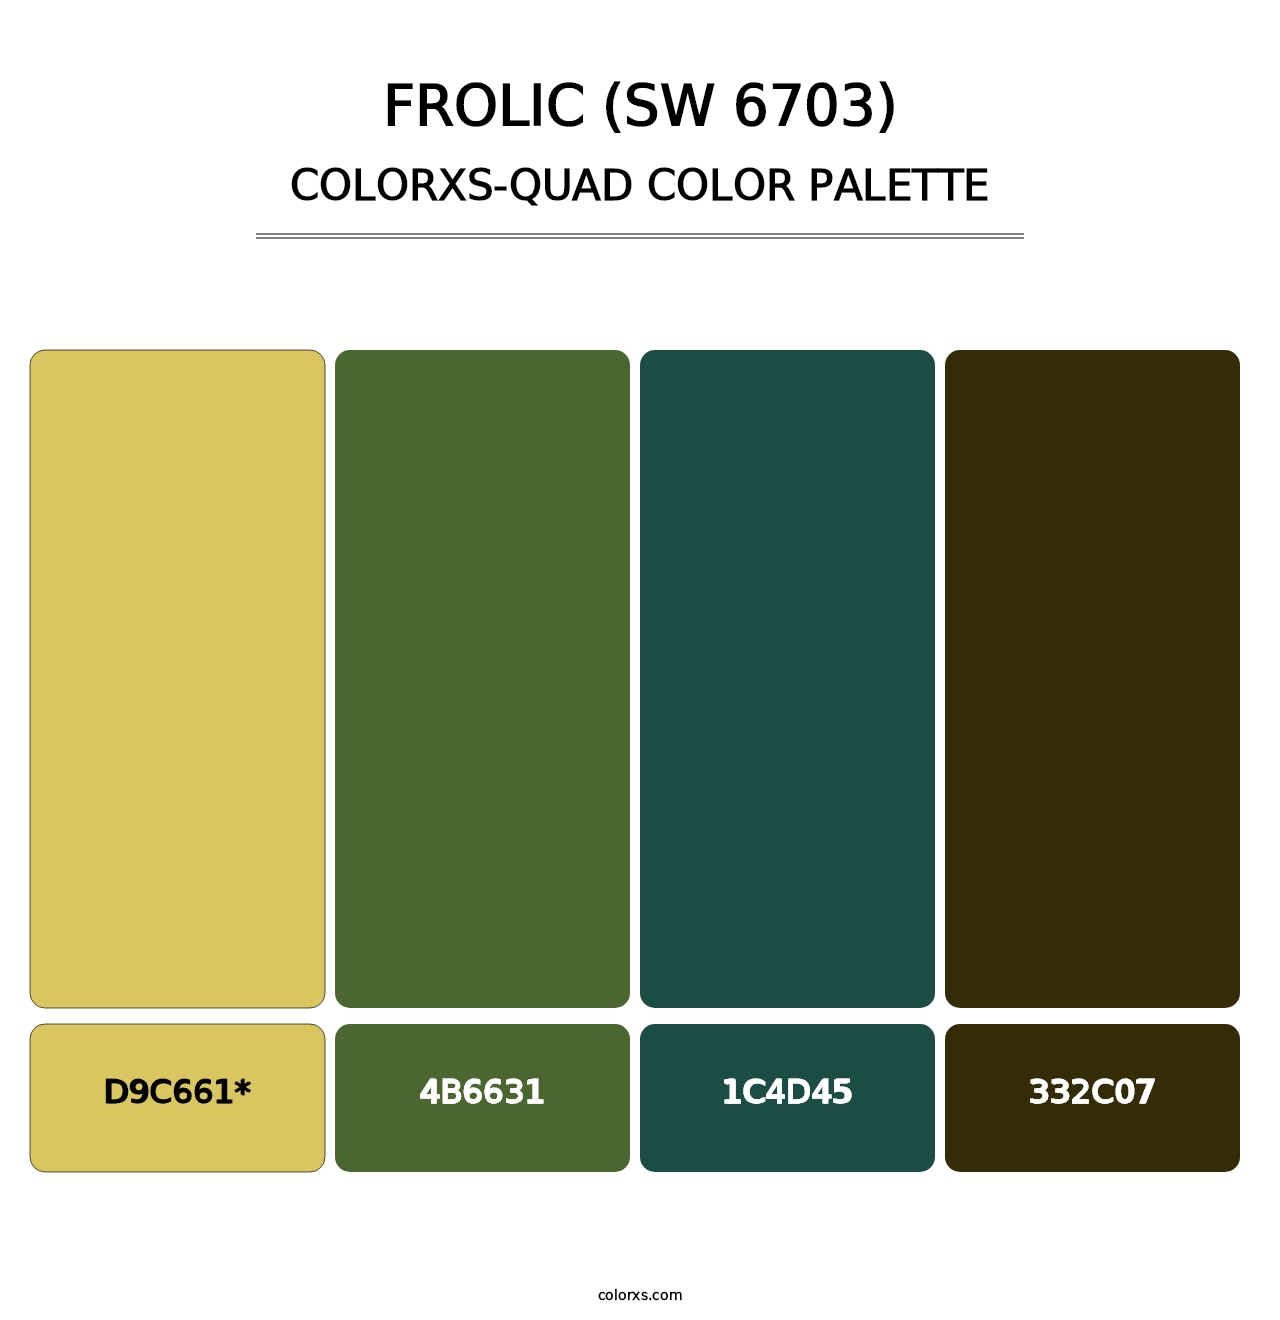 Frolic (SW 6703) - Colorxs Quad Palette